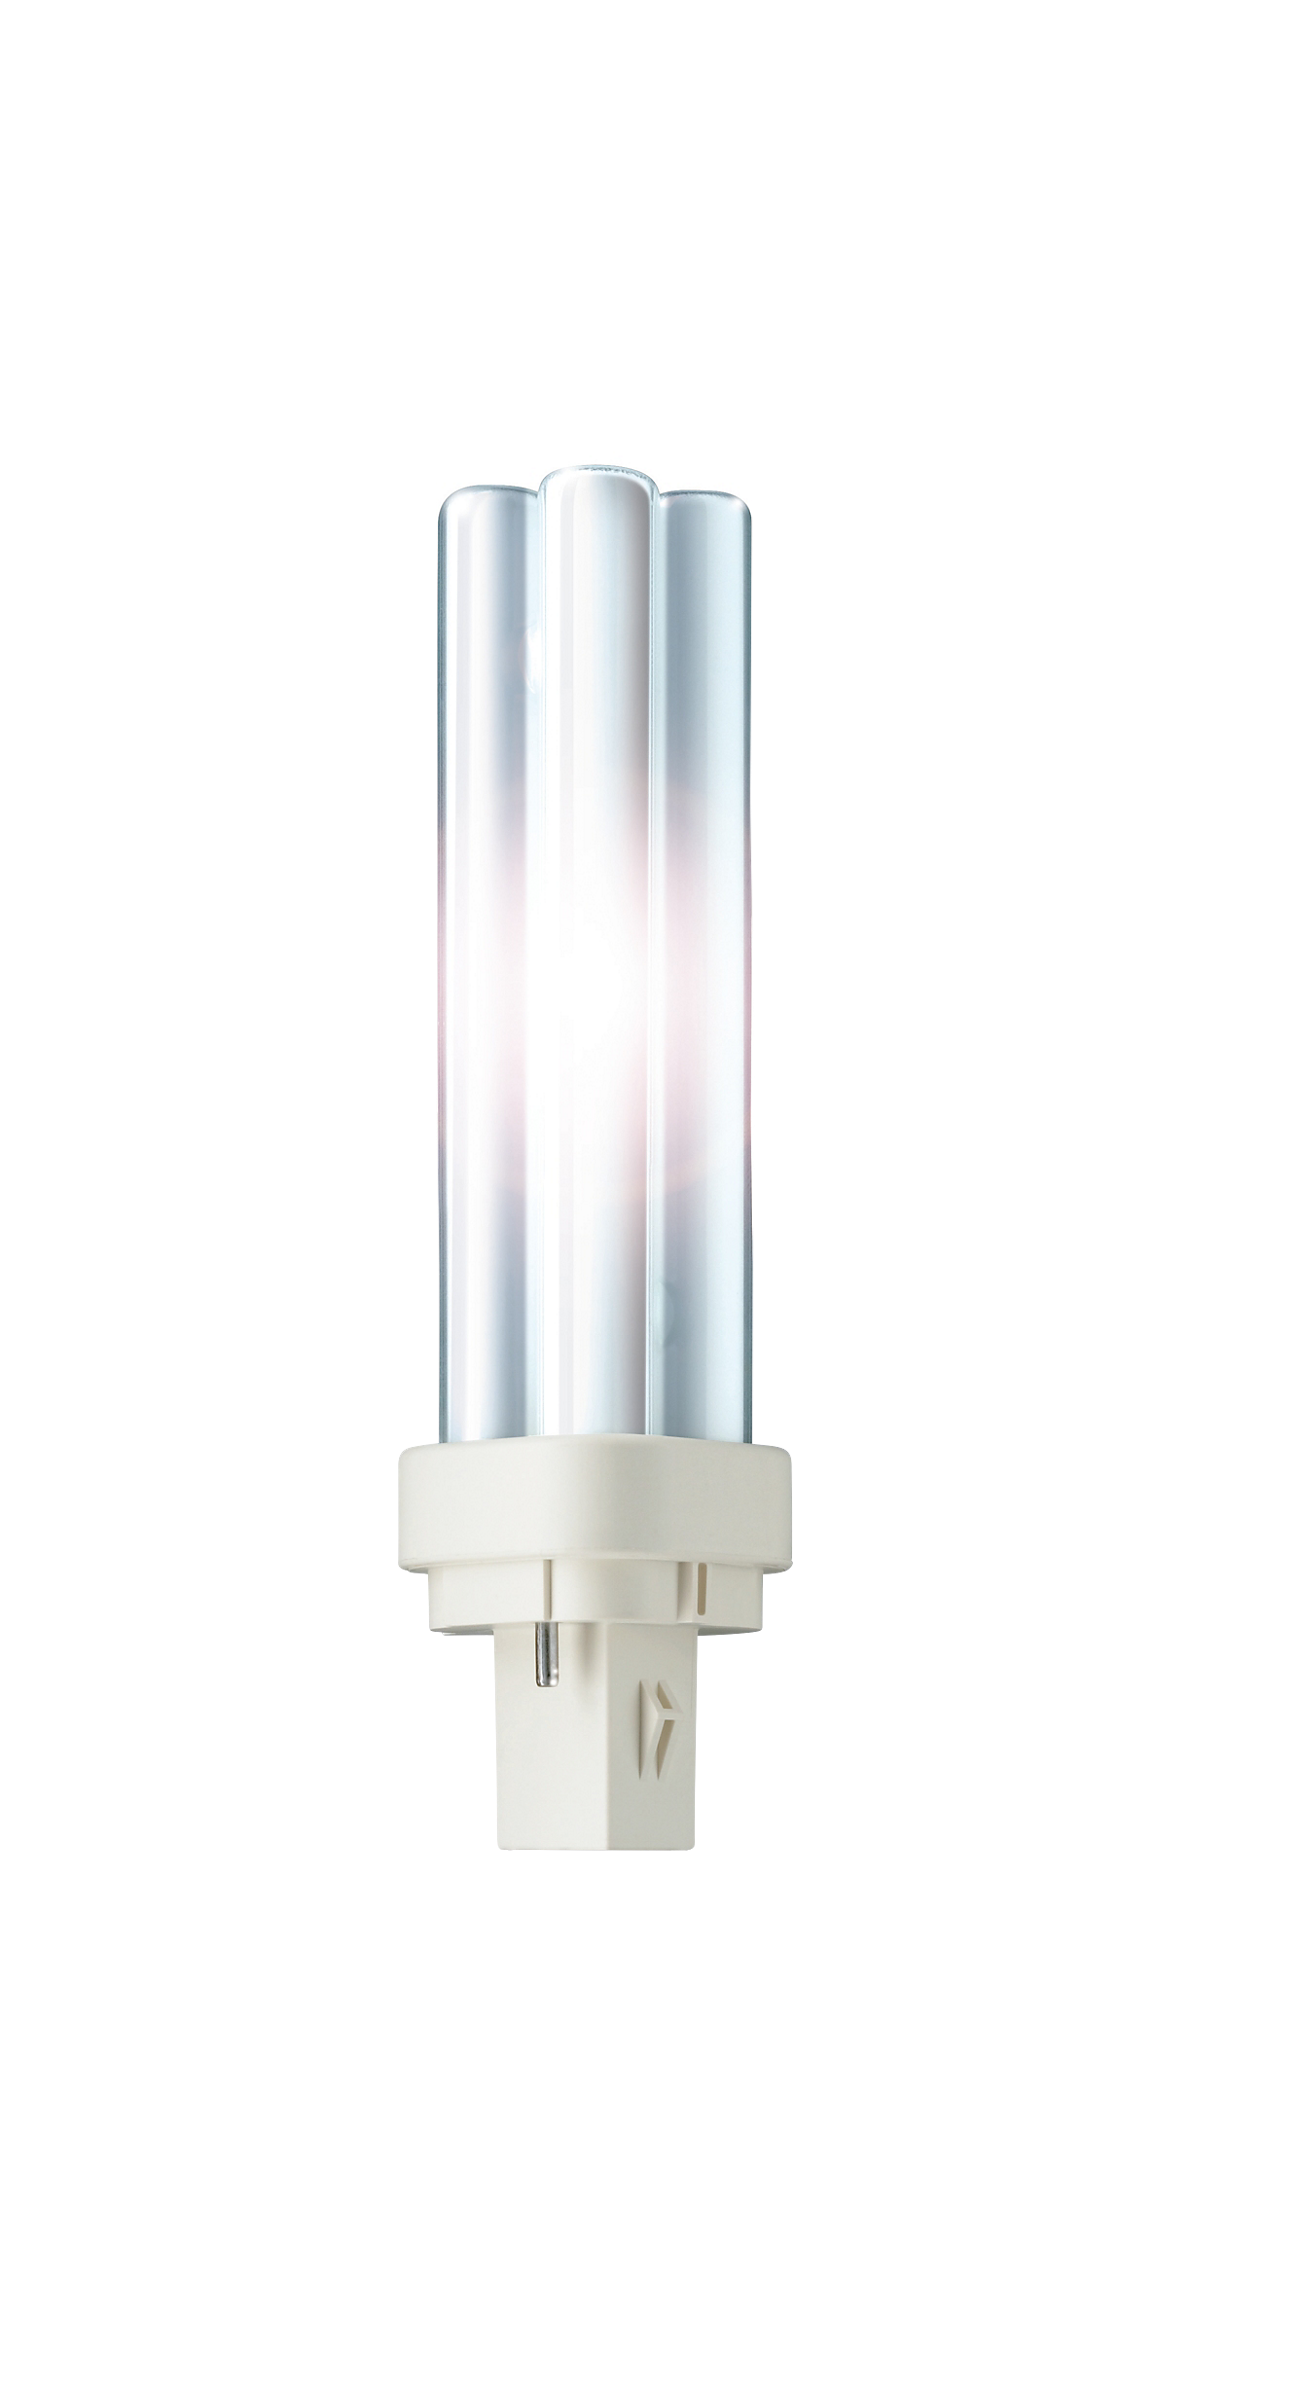 10 x Philips MASTER PL-C 13 W 830 2P G24d-2 1 lámpara fluorescente compacta Blanco Cálido Nuevo y original 